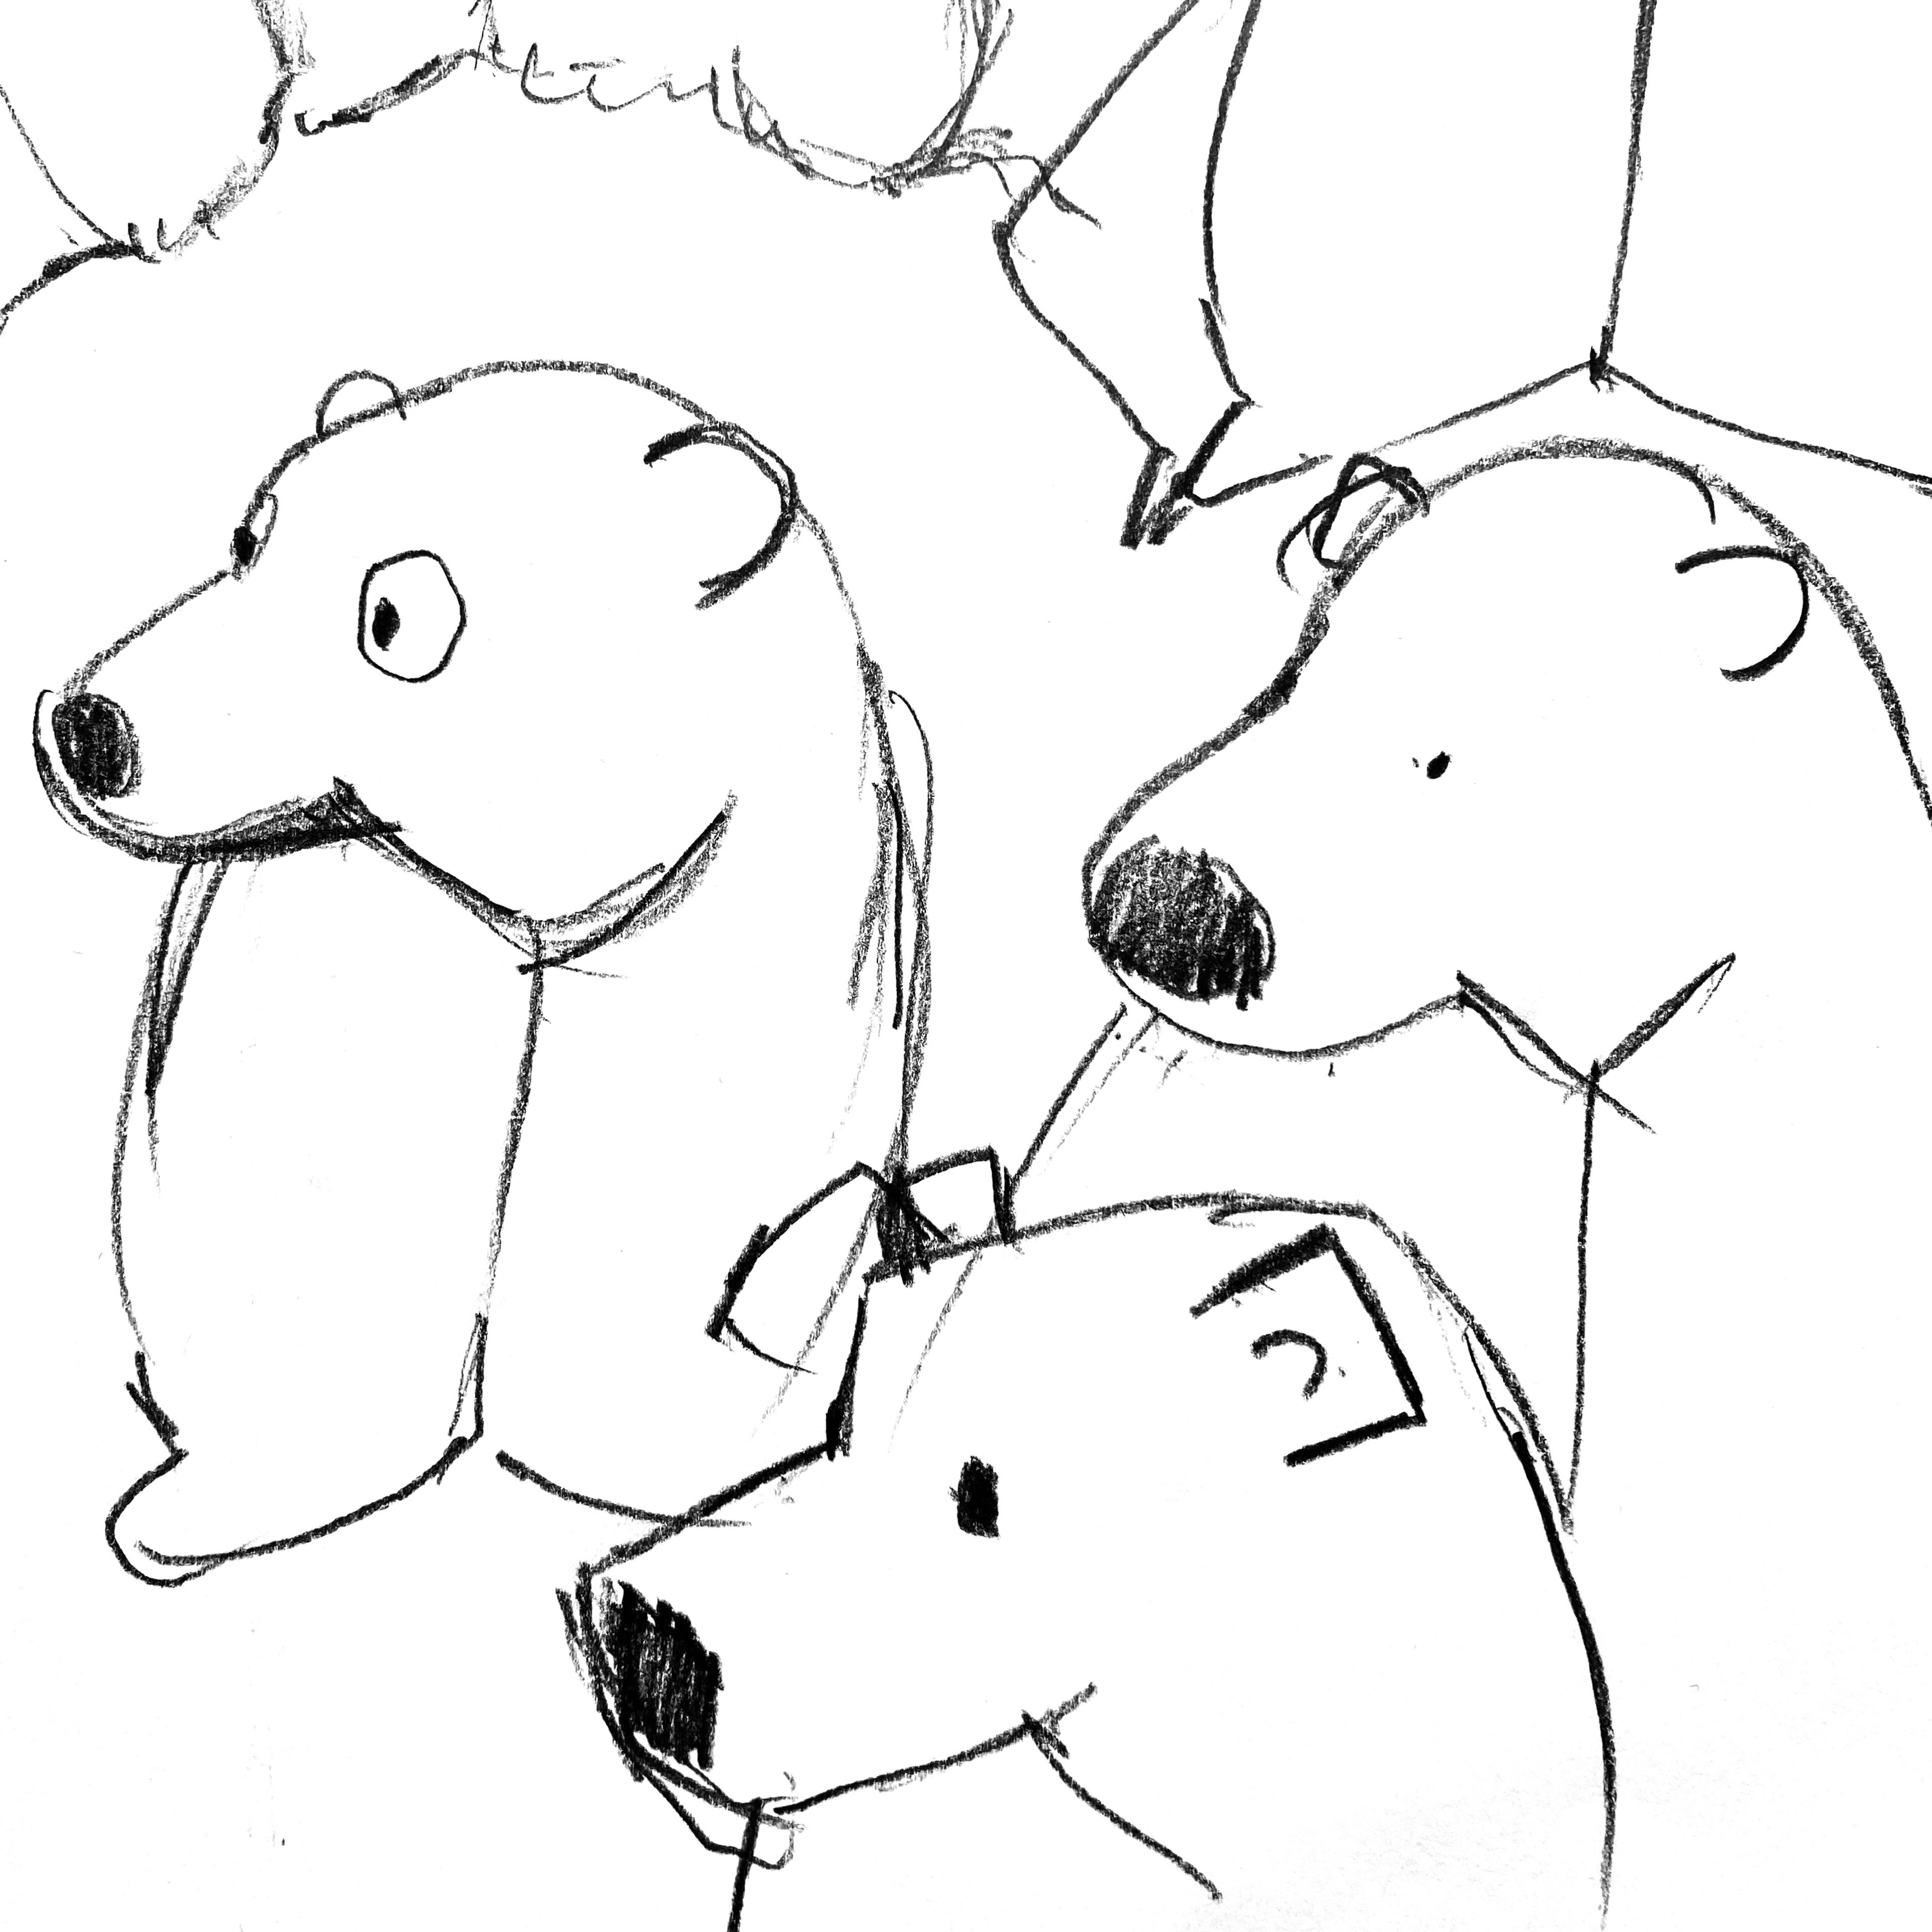 Line drawings of bears.